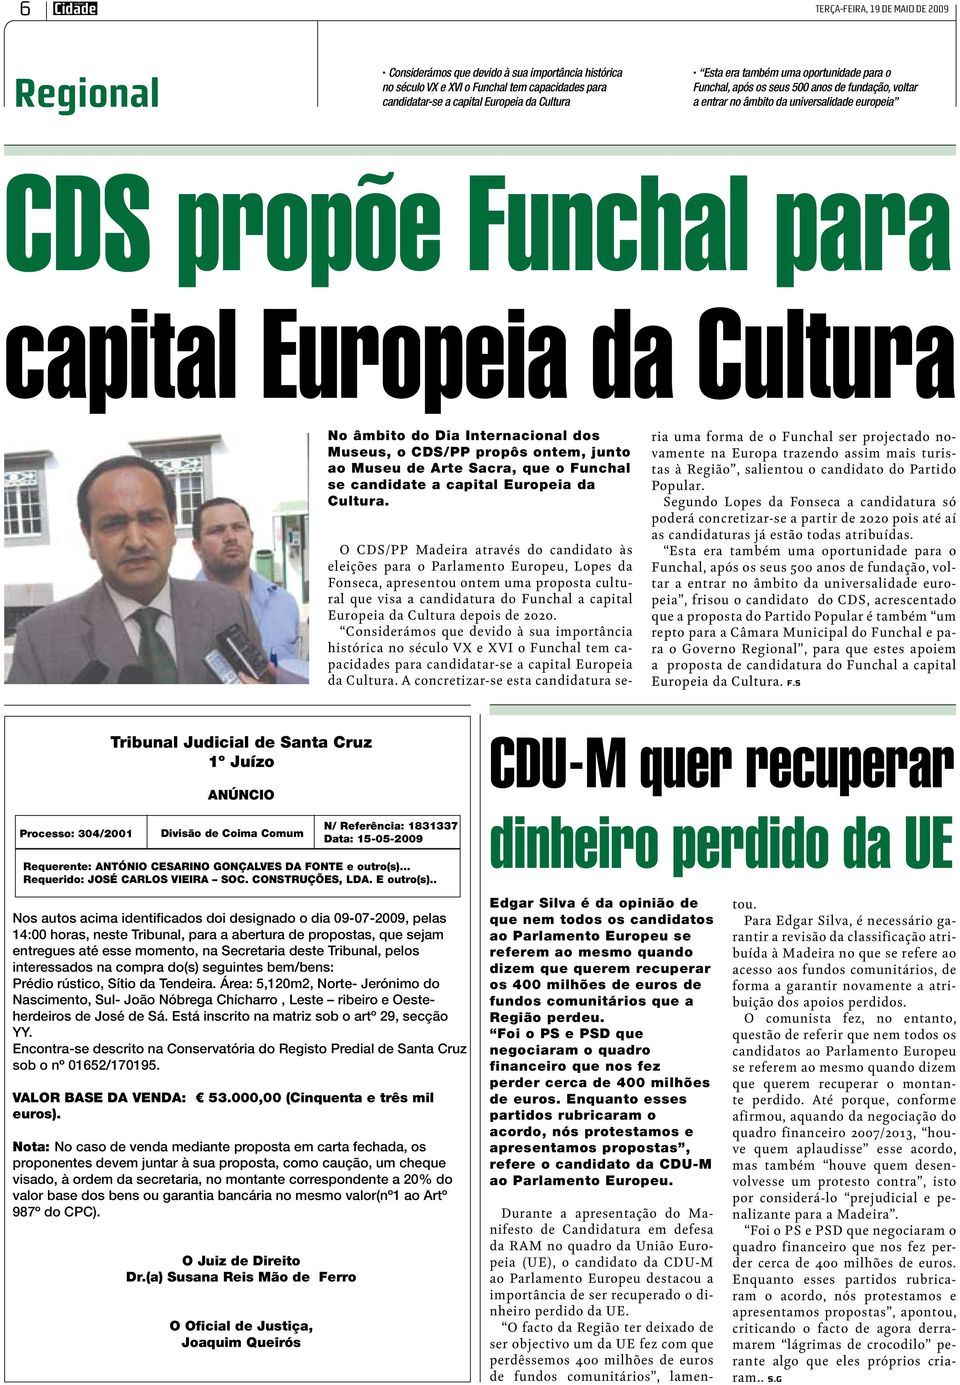 Internacional dos Museus, o CDS/PP propôs ontem, junto ao Museu de Arte Sacra, que o Funchal se candidate a capital Europeia da Cultura.